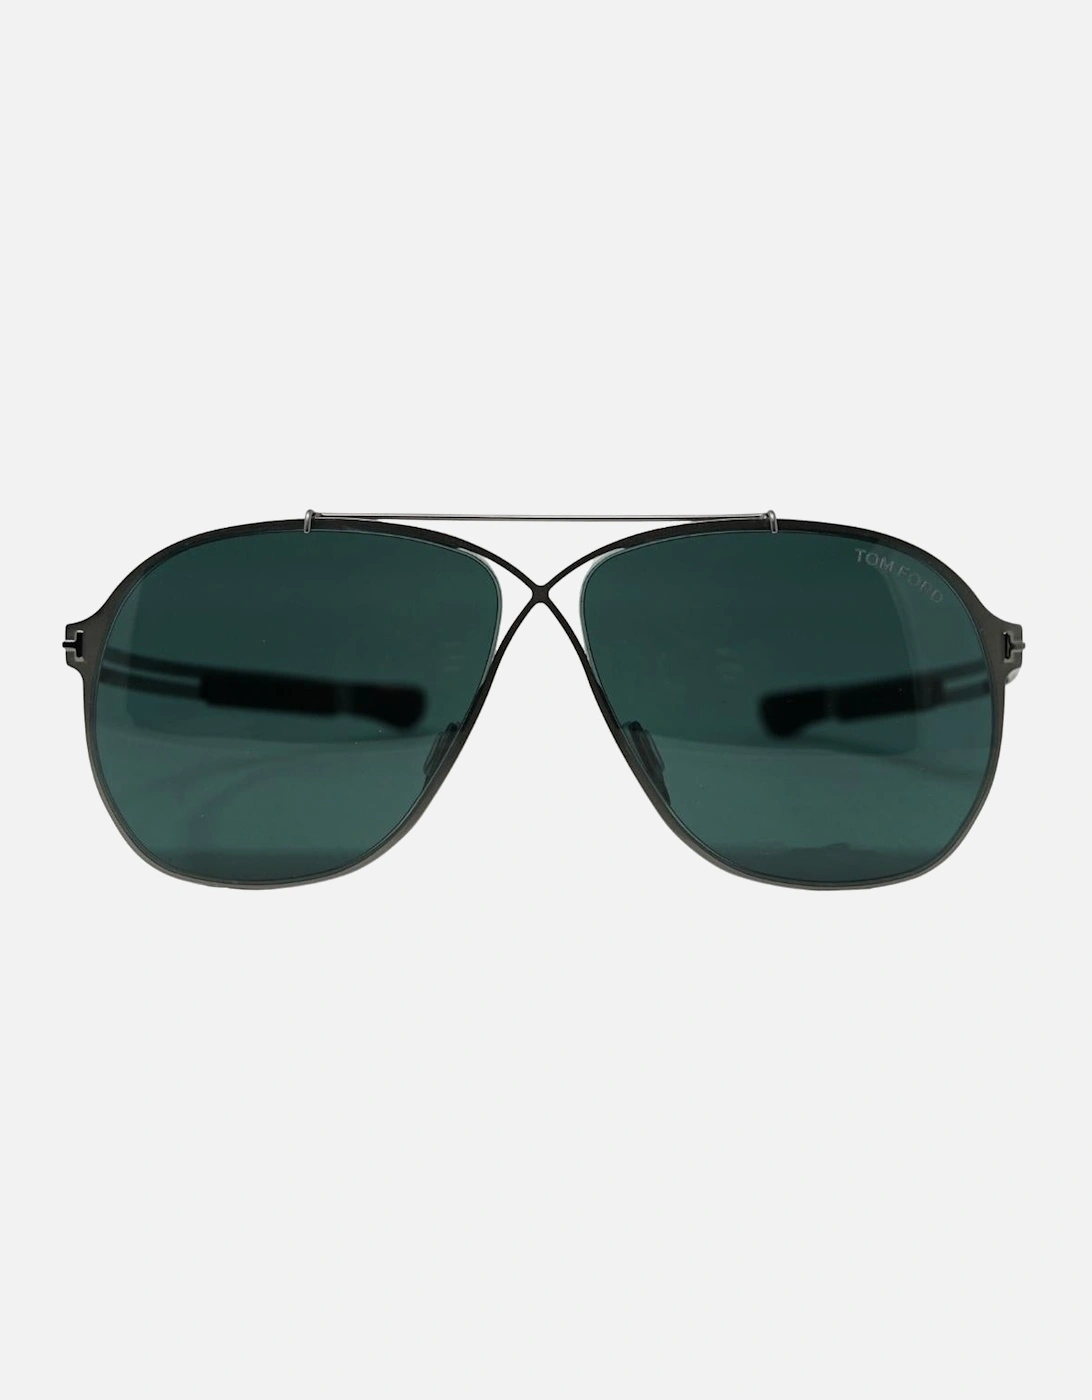 Orsen FT0829 14V Silver Sunglasses, 4 of 3